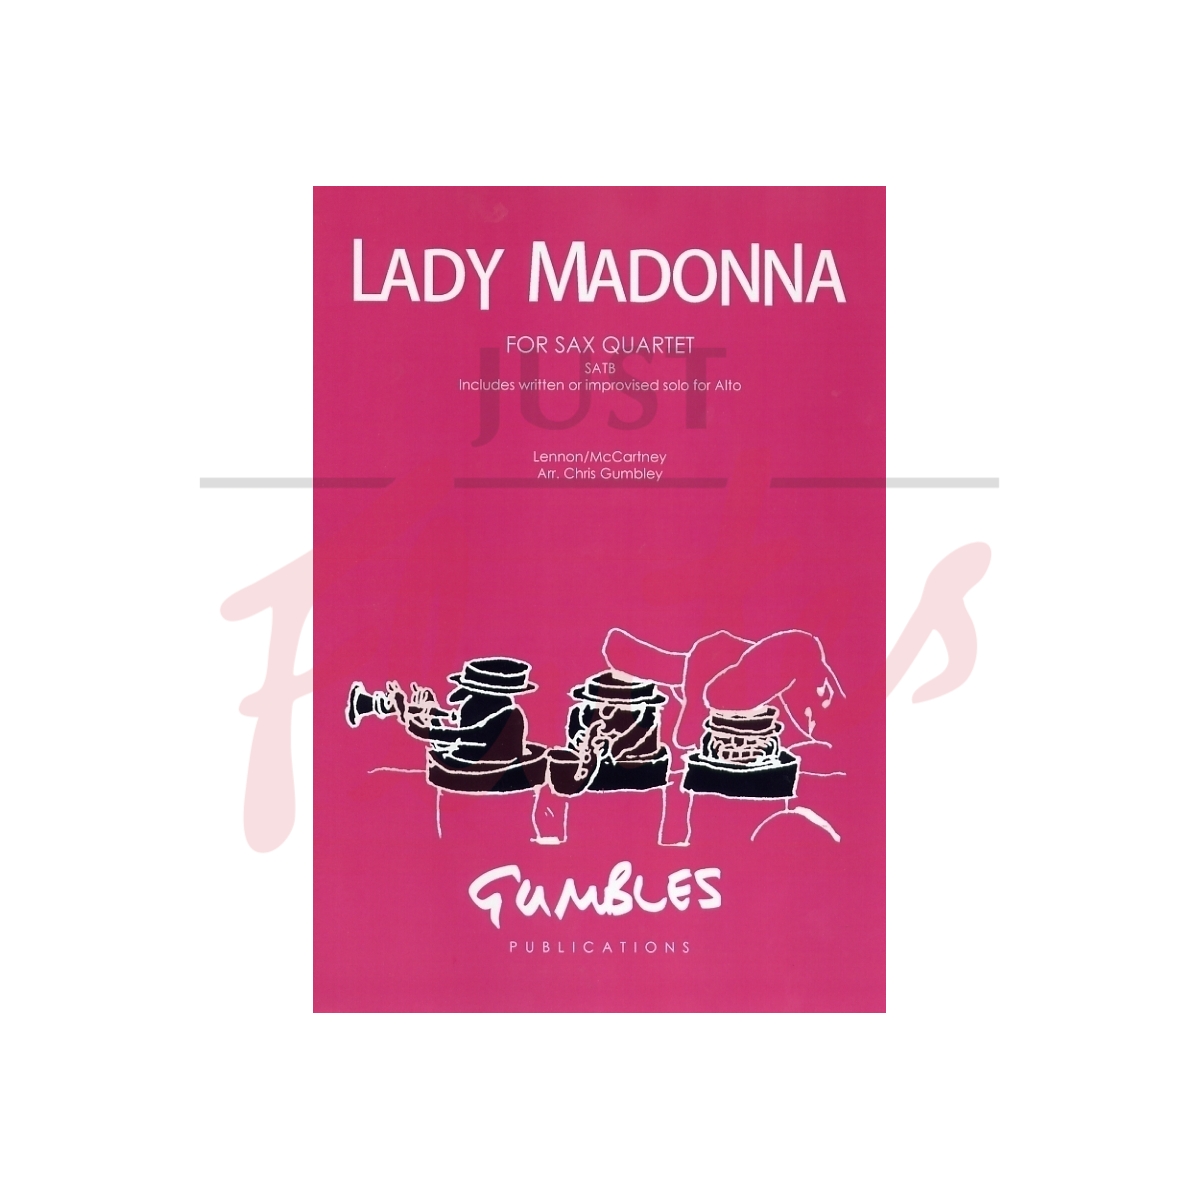 Lady Madonna for Sax Quartet